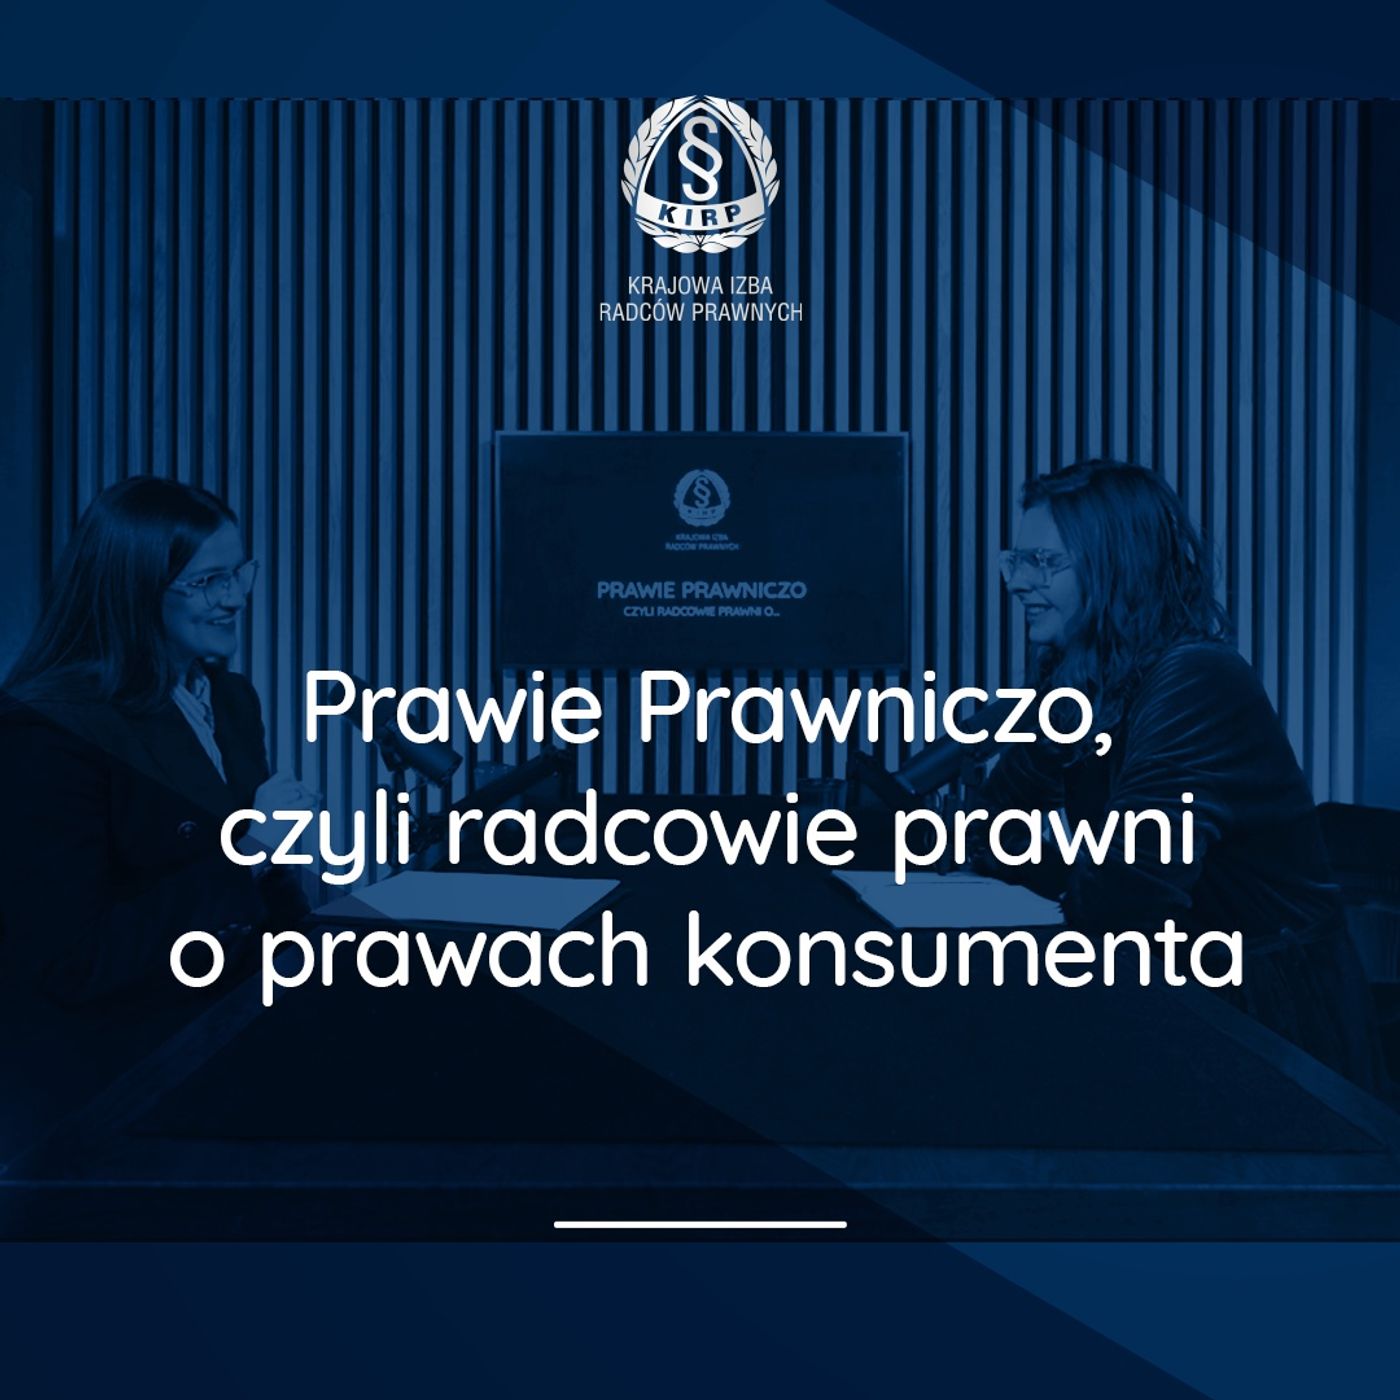 Prawie Prawniczo, czyli radcowie prawni o prawach konsumenta - r.pr. Martyna Lisowska